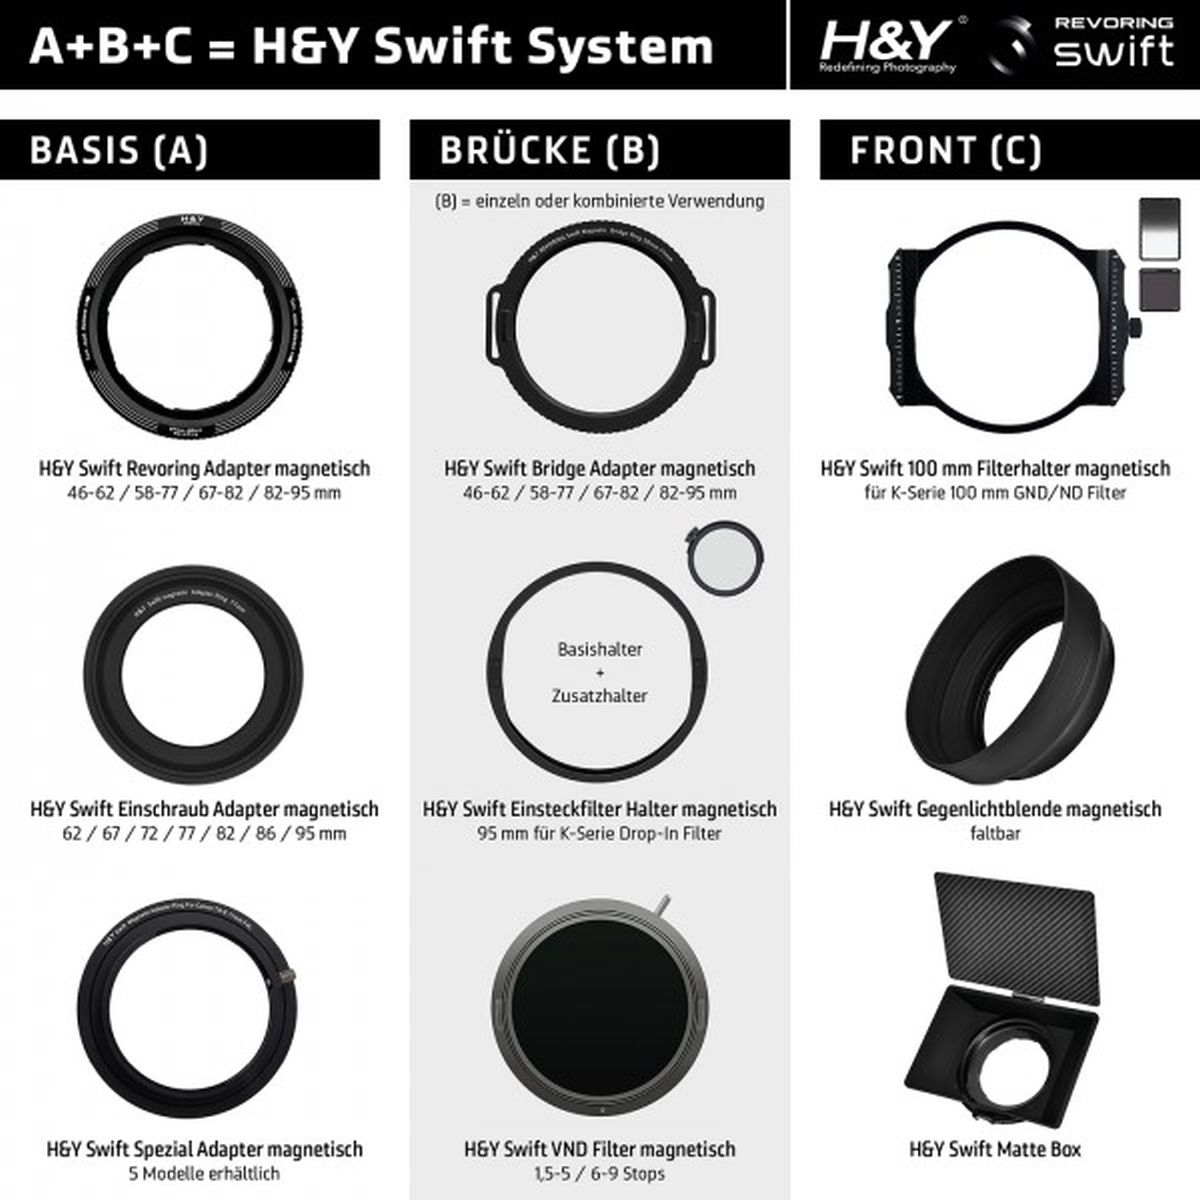 H&Y Swift A 86 mm Einschraub-Adapter magnetisch